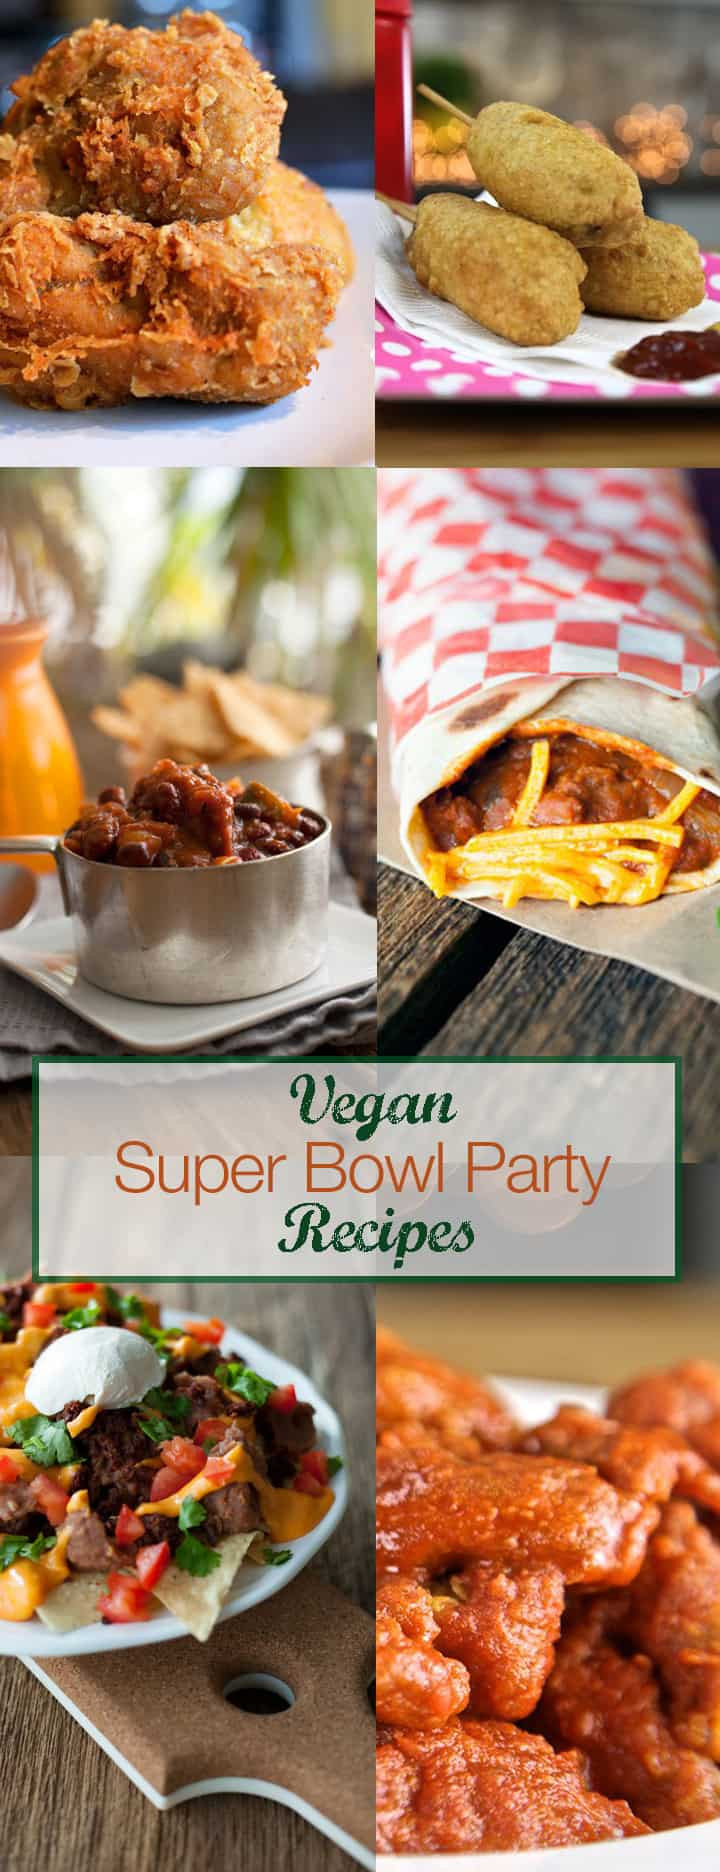 Super Bowl Vegan Recipes
 Easy Super Bowl Recipes VEGAN